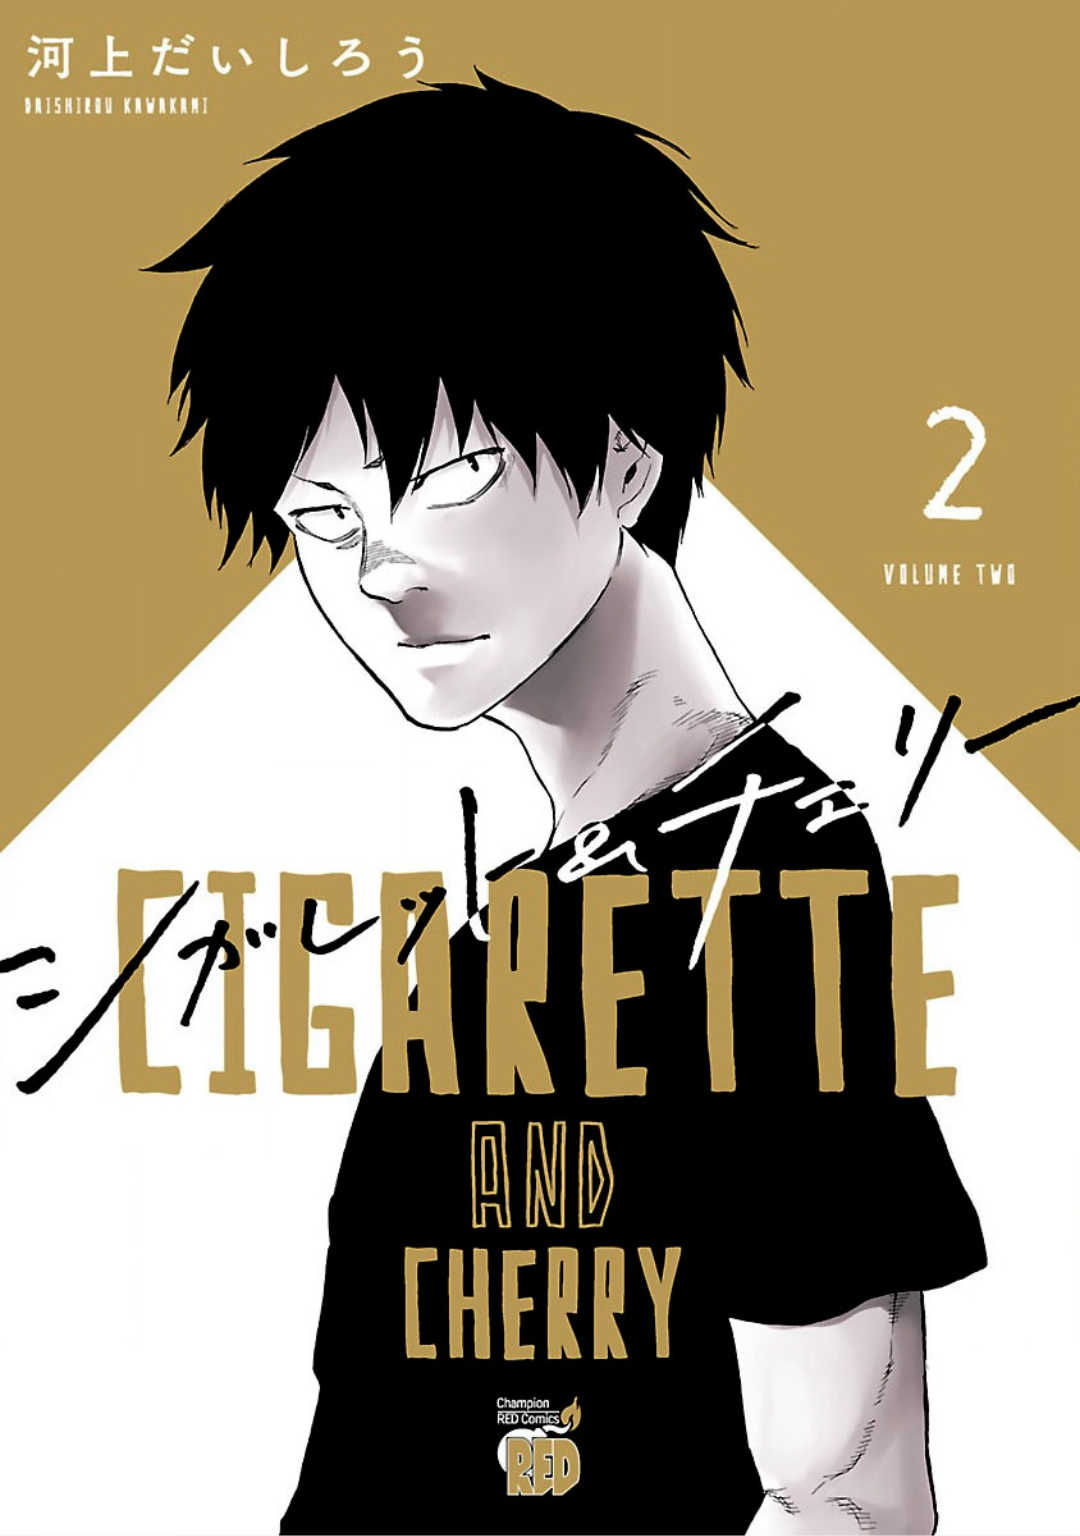 Cigarette & Cherry 13 (2)